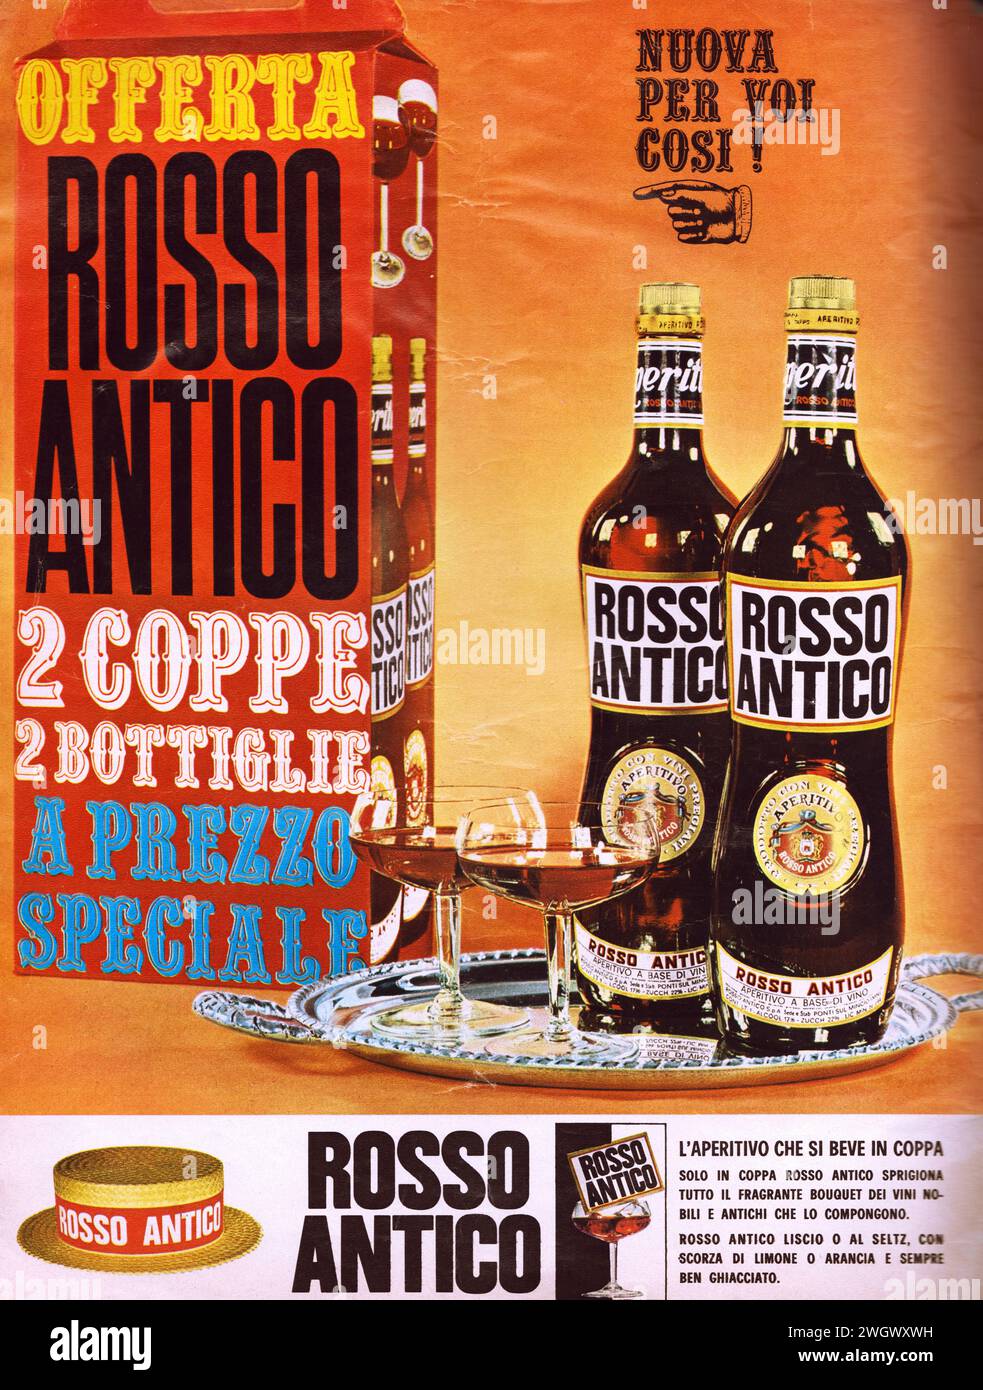 Rosso Antico Pubblicità di una vecchia rivista in italiano Foto Stock